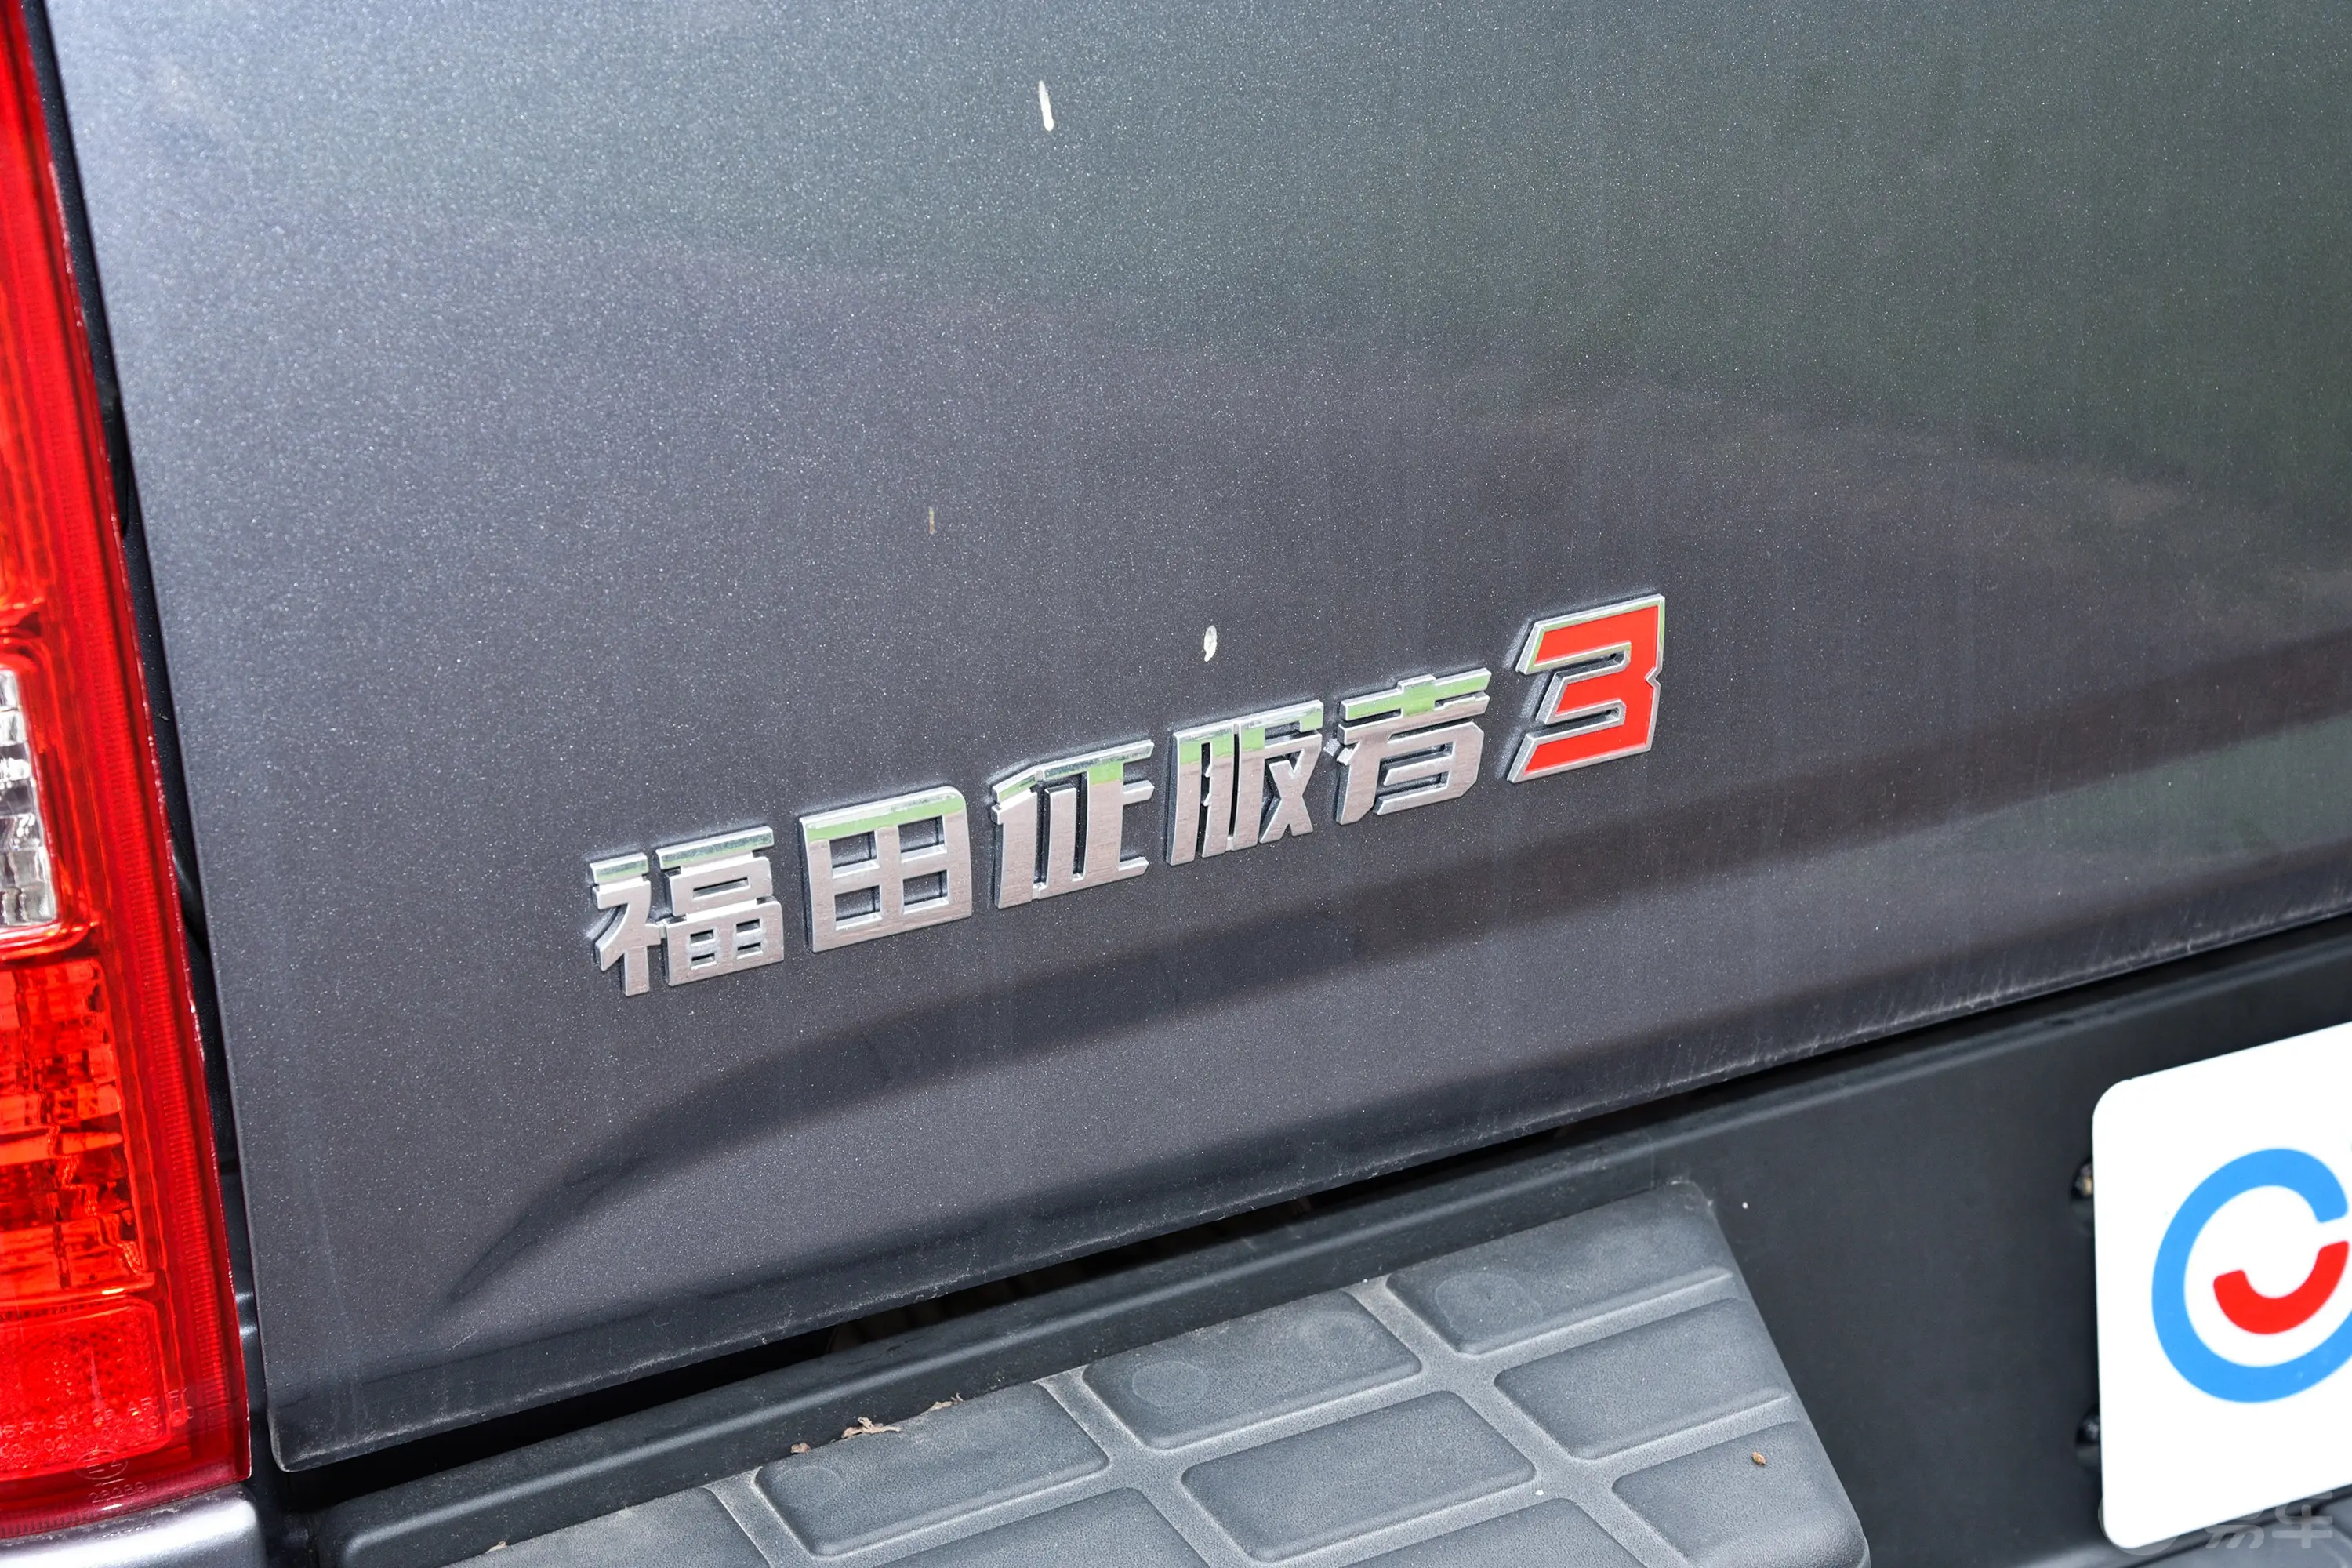 福田征服者32.0T 自动两驱长轴天下无敌 柴油外观细节